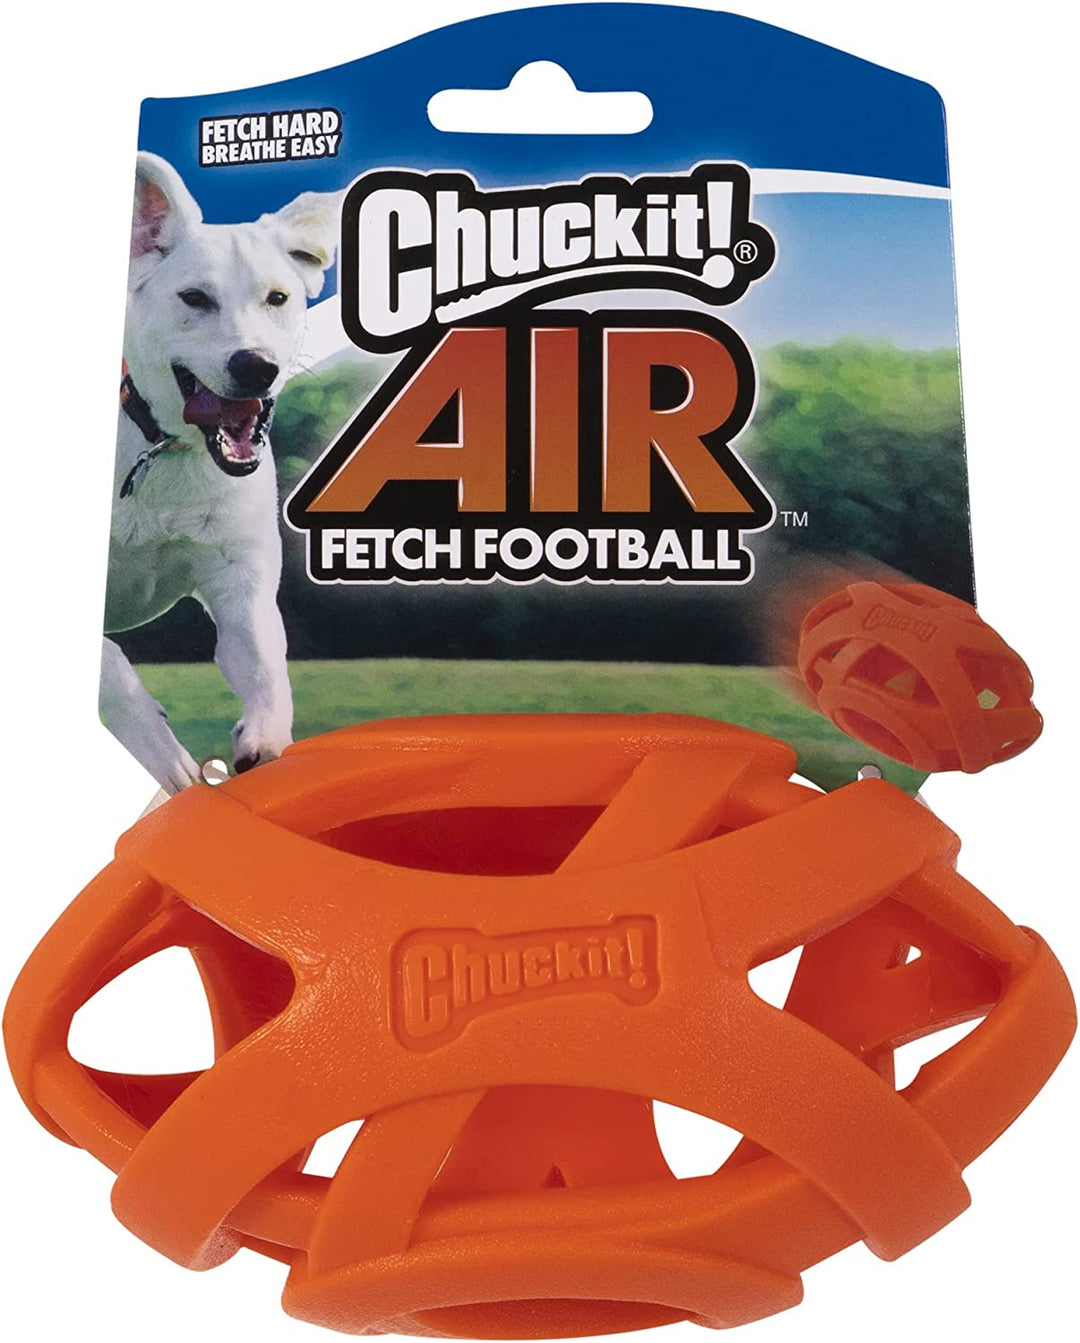 Chuckit! Air Fetch Football